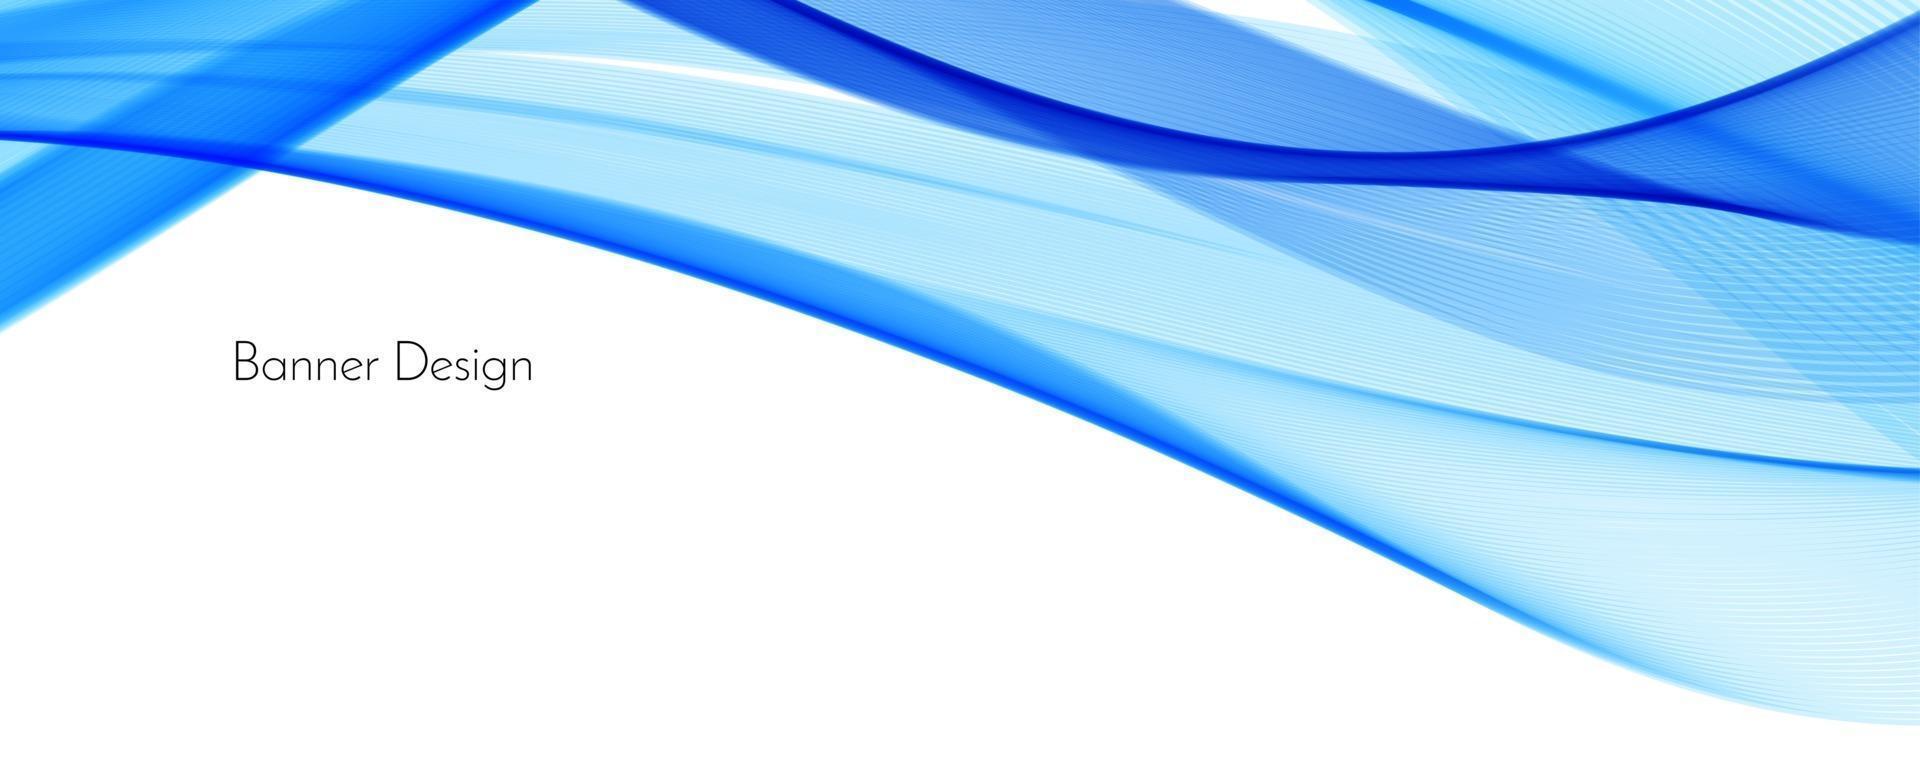 abstrakter blauer moderner Wellenentwurfsfahnenhintergrund vektor